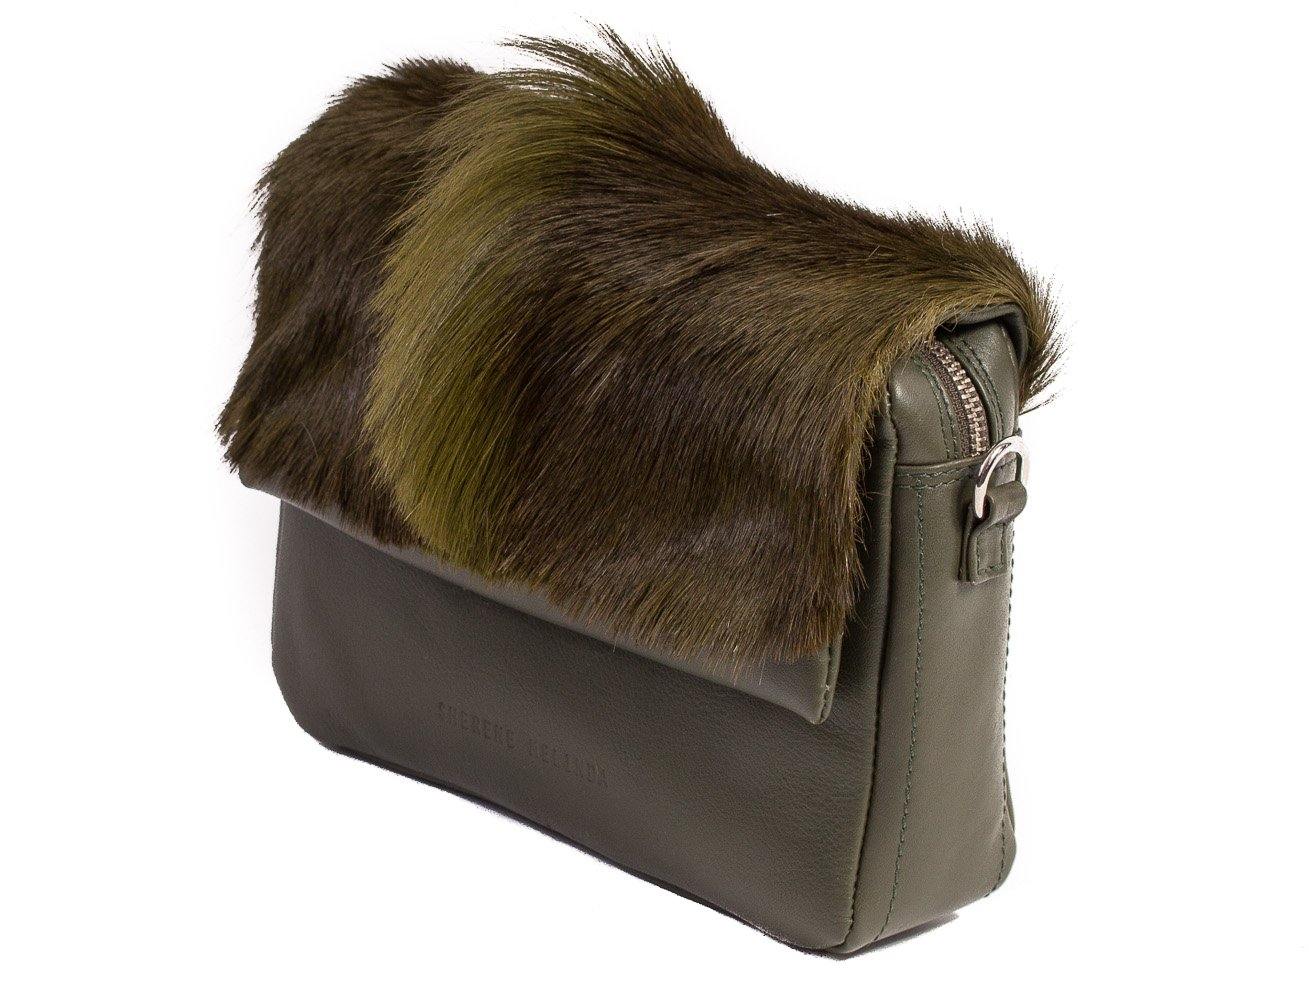 sherene melinda springbok hair-on-hide green leather shoulder bag Fan side angle